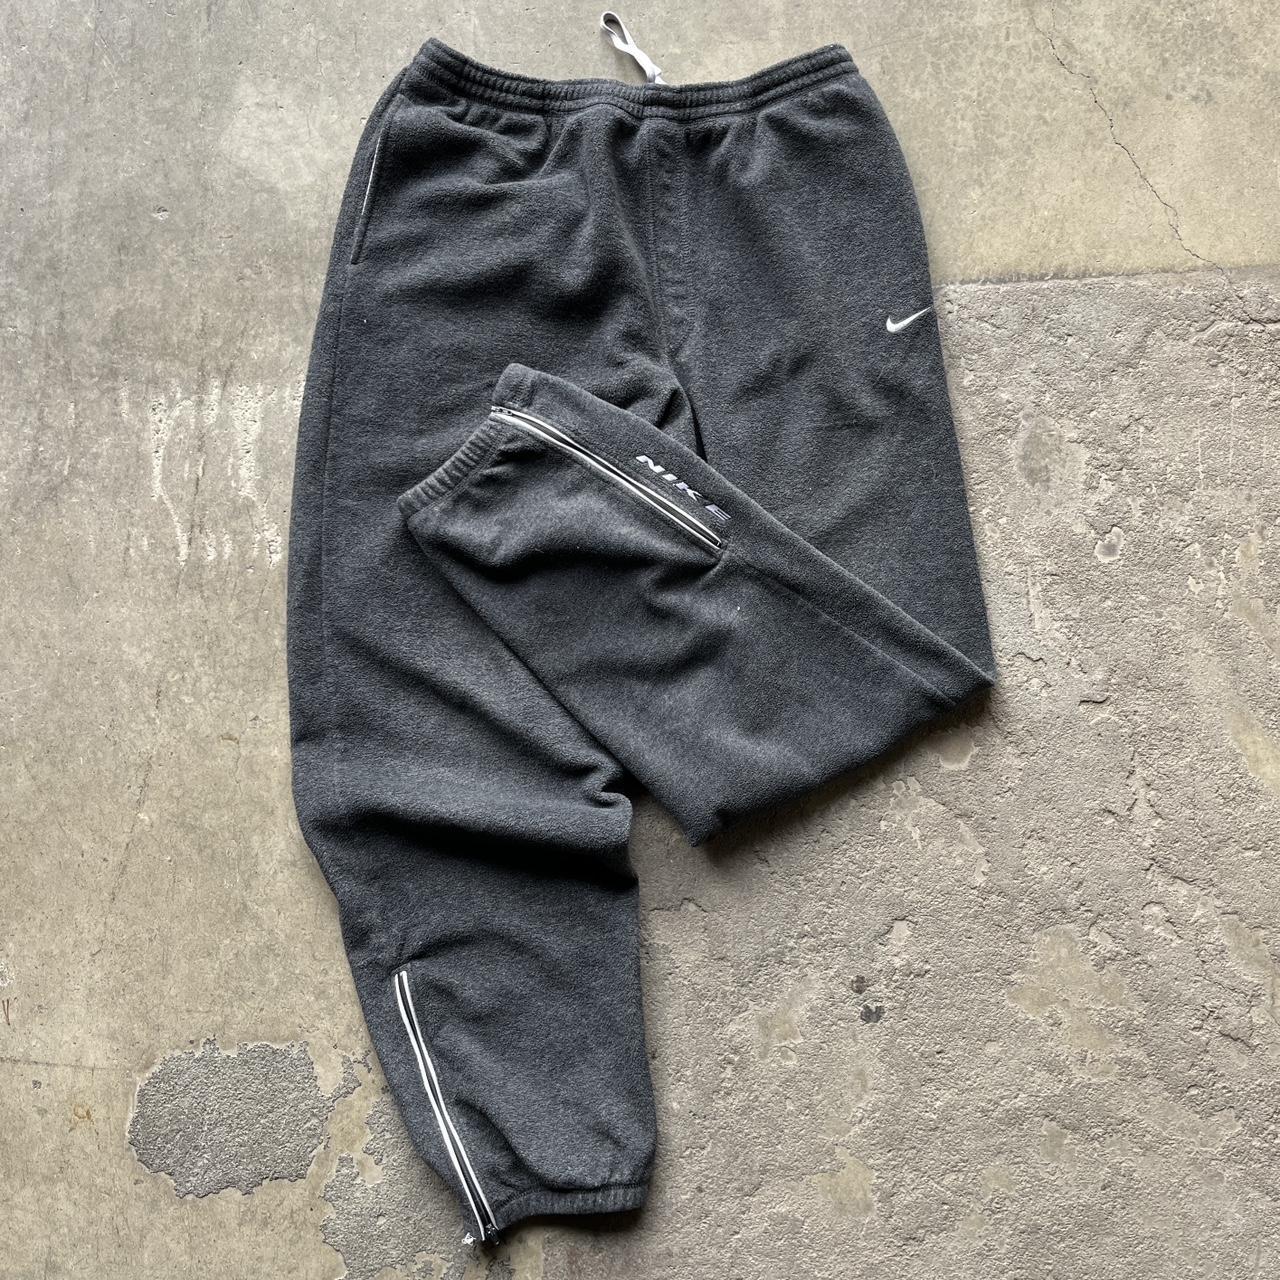 Vintage Black Nike Sweatpants Size XL